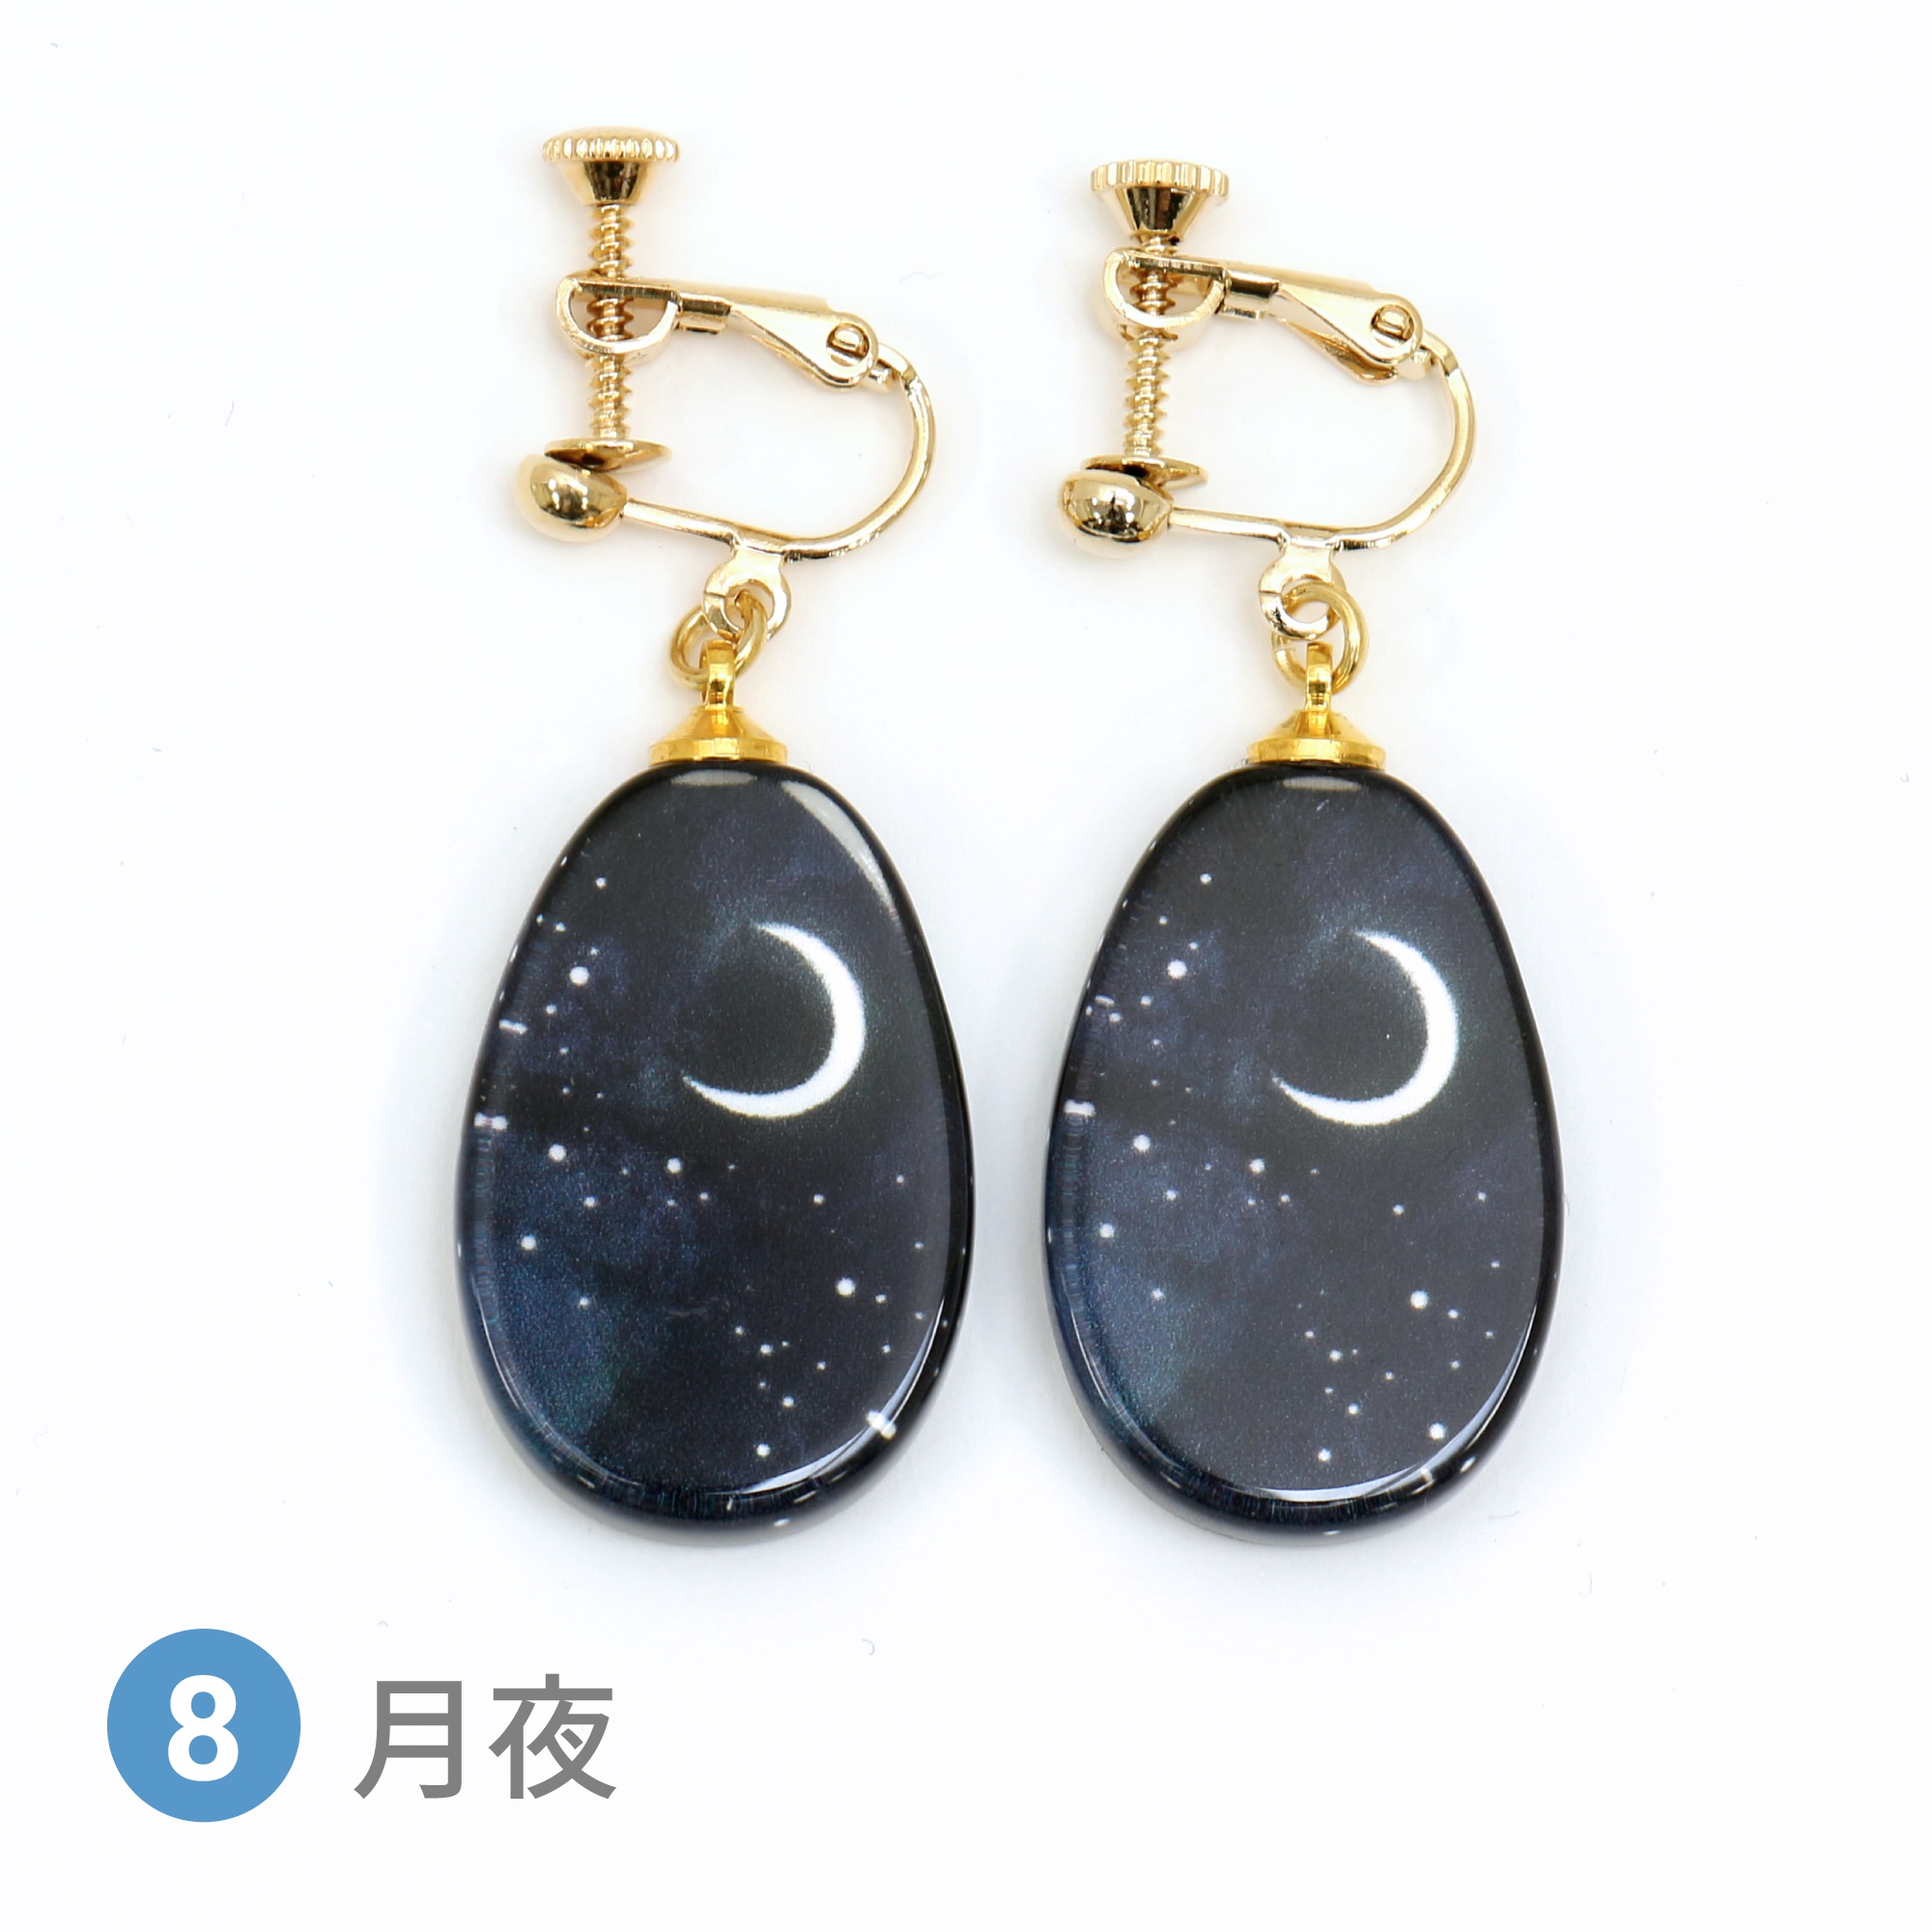 Glass accessories Earring STARRY SKY moonlit night drop shape